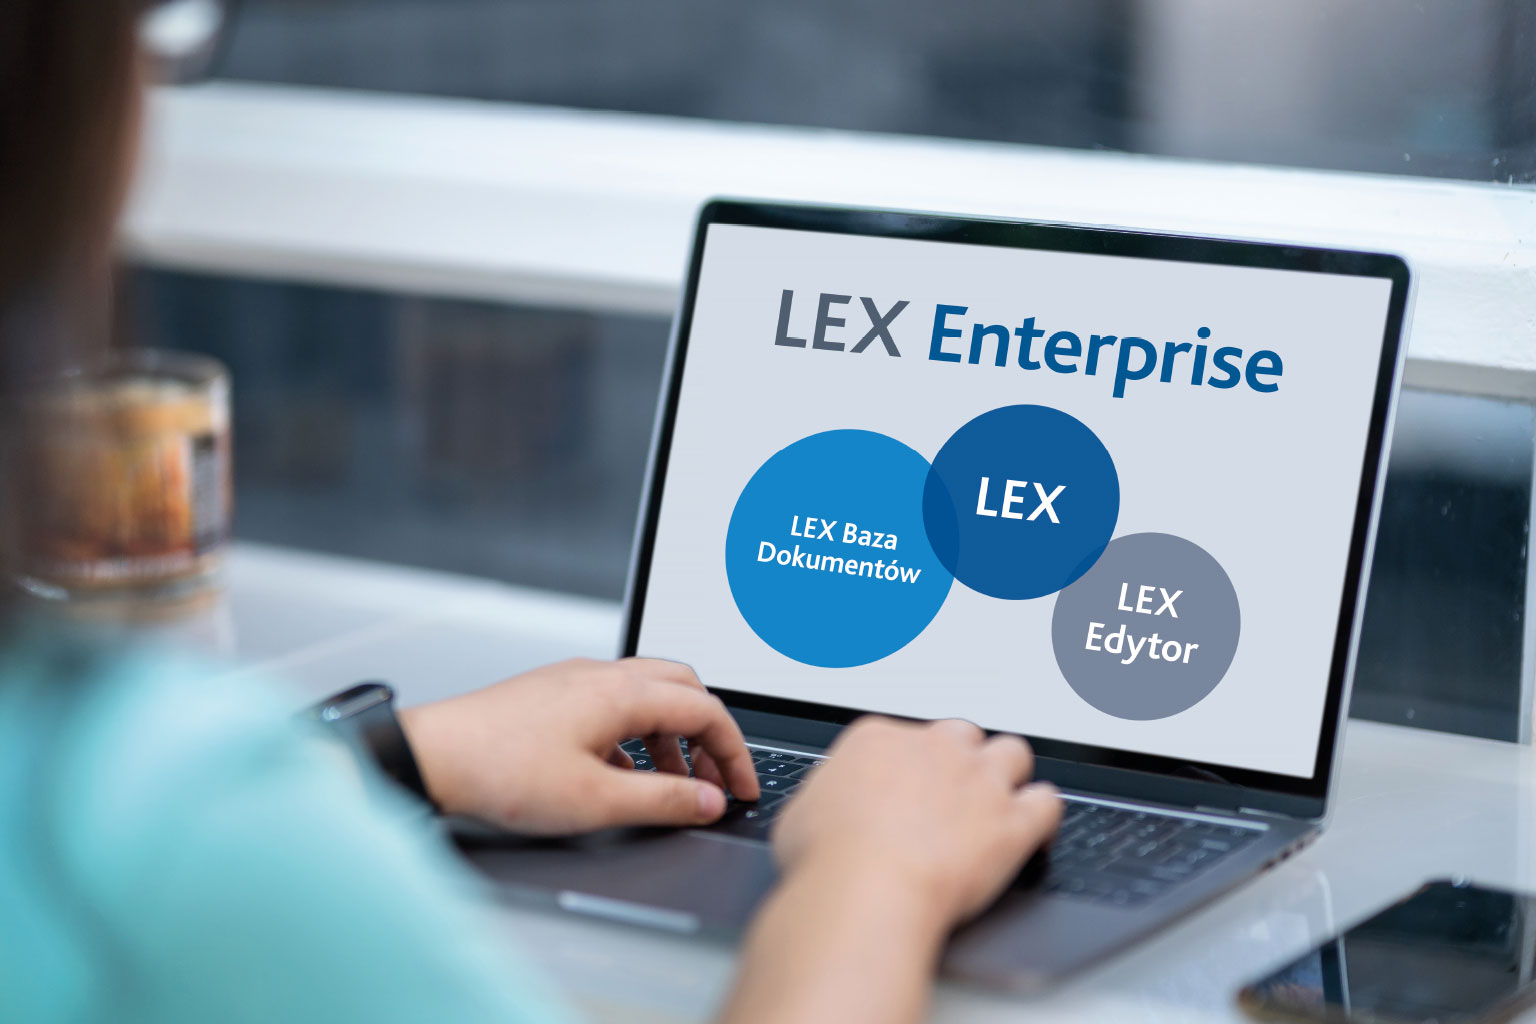 LEX Enterprise